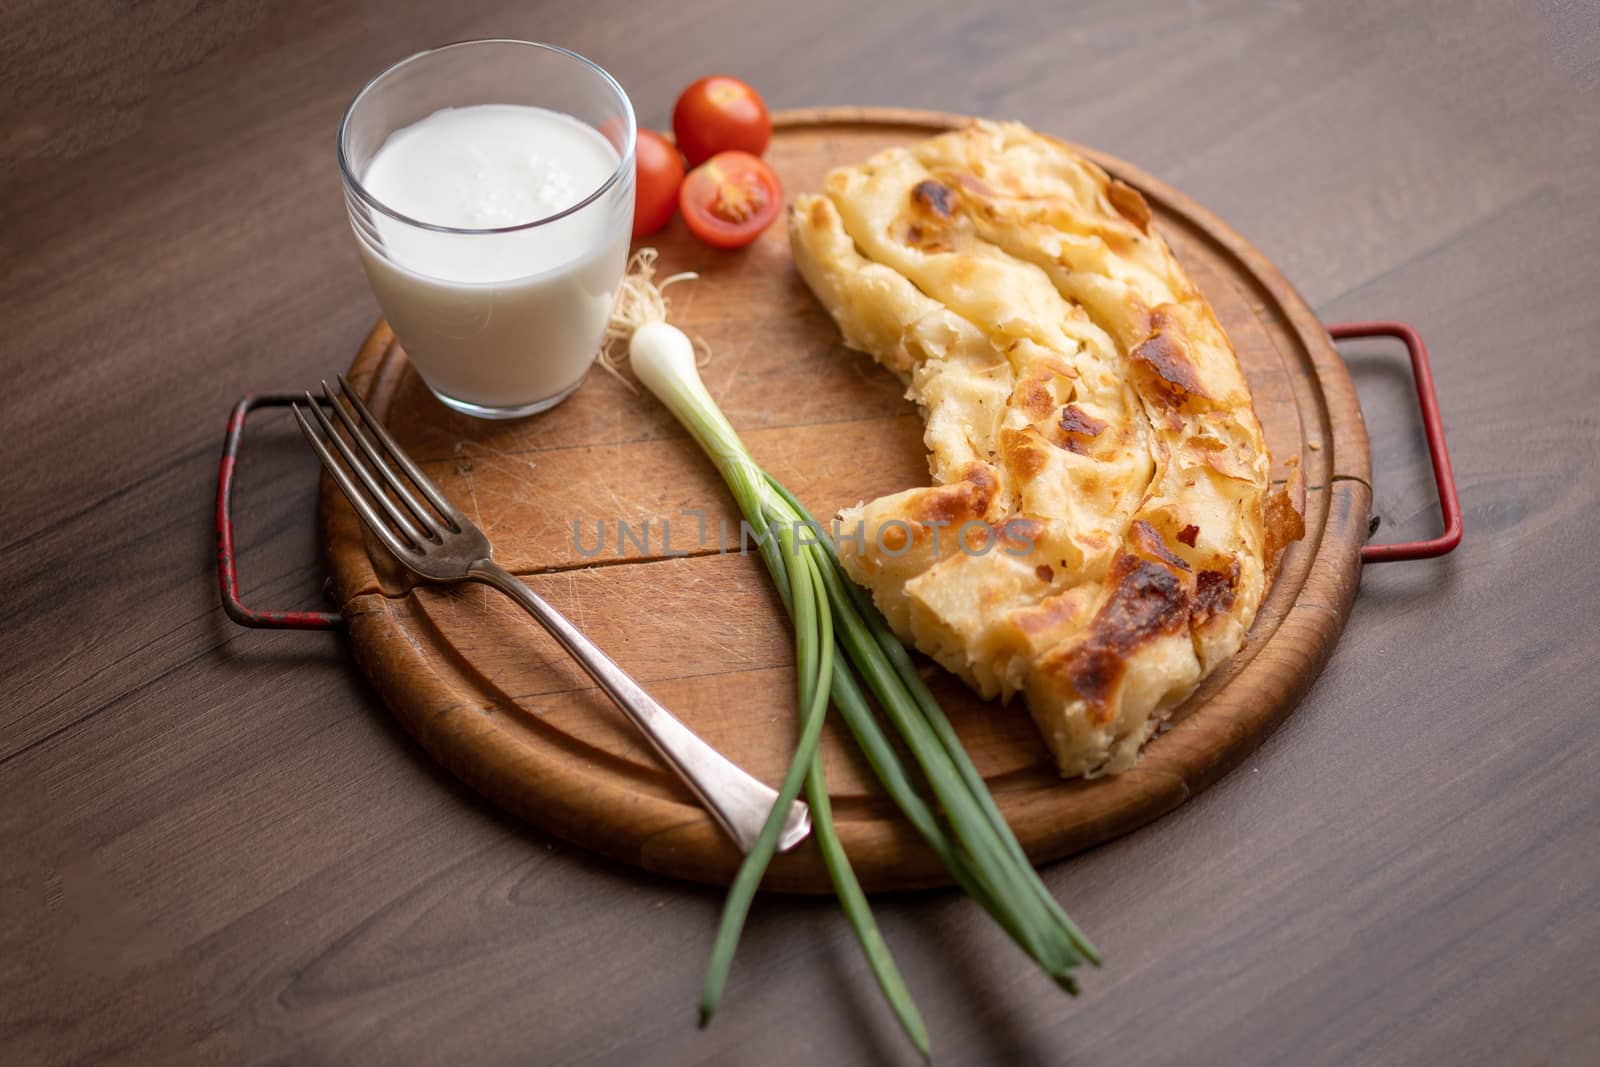 Traditional balkan breakfast - Borek or Burek pie with cheese aranged on wooden table